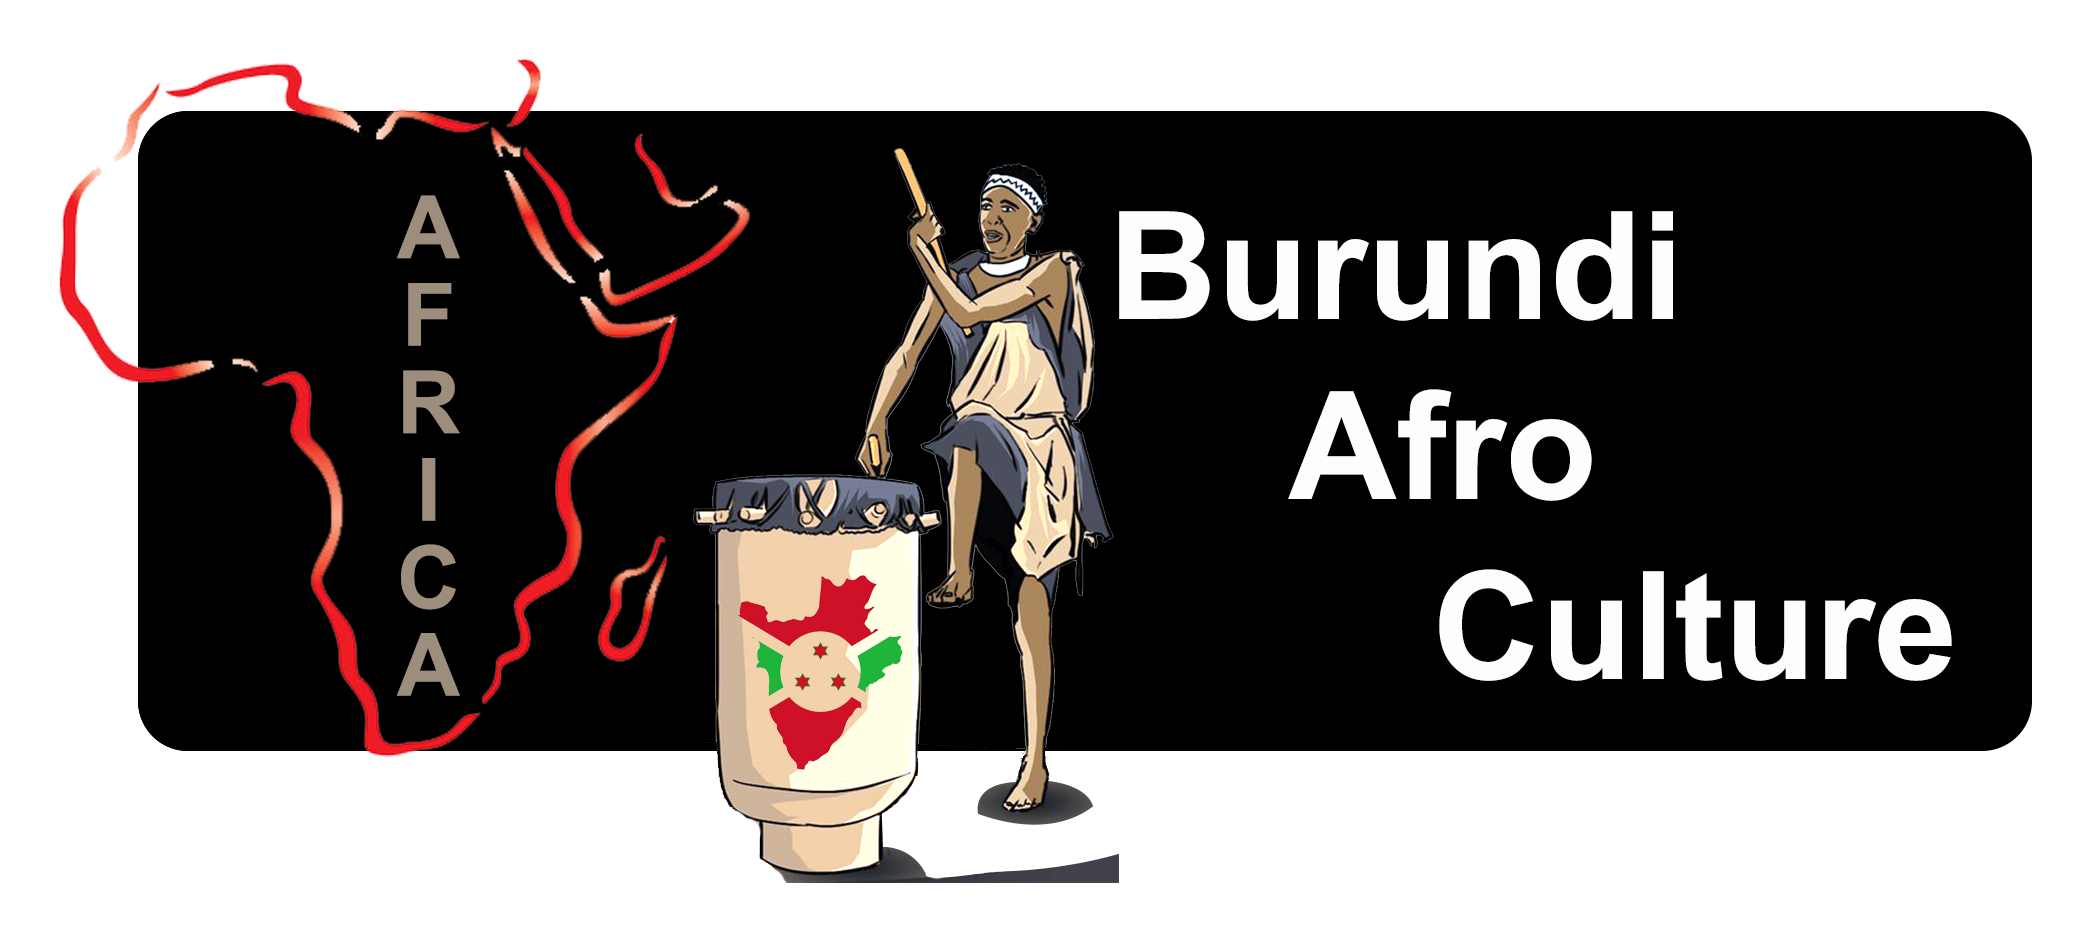 Burundi Afro Culture